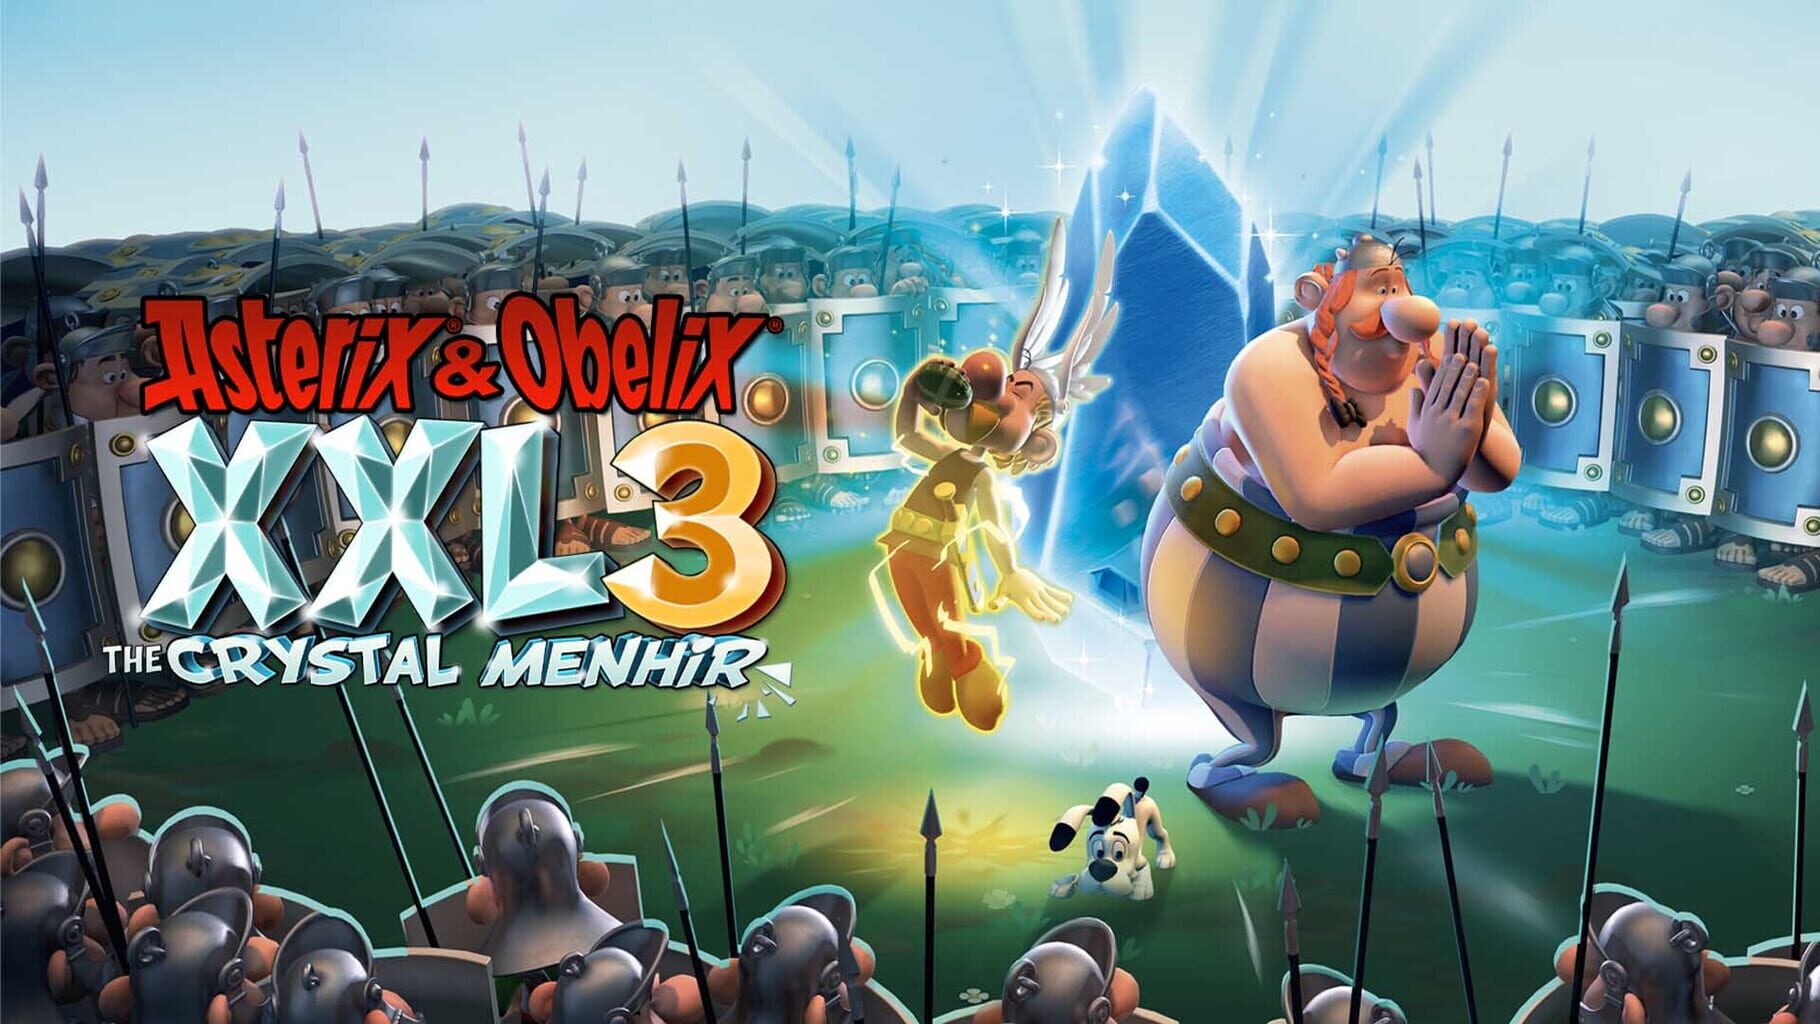 Arte - Asterix & Obelix XXL 3: The Crystal Menhir